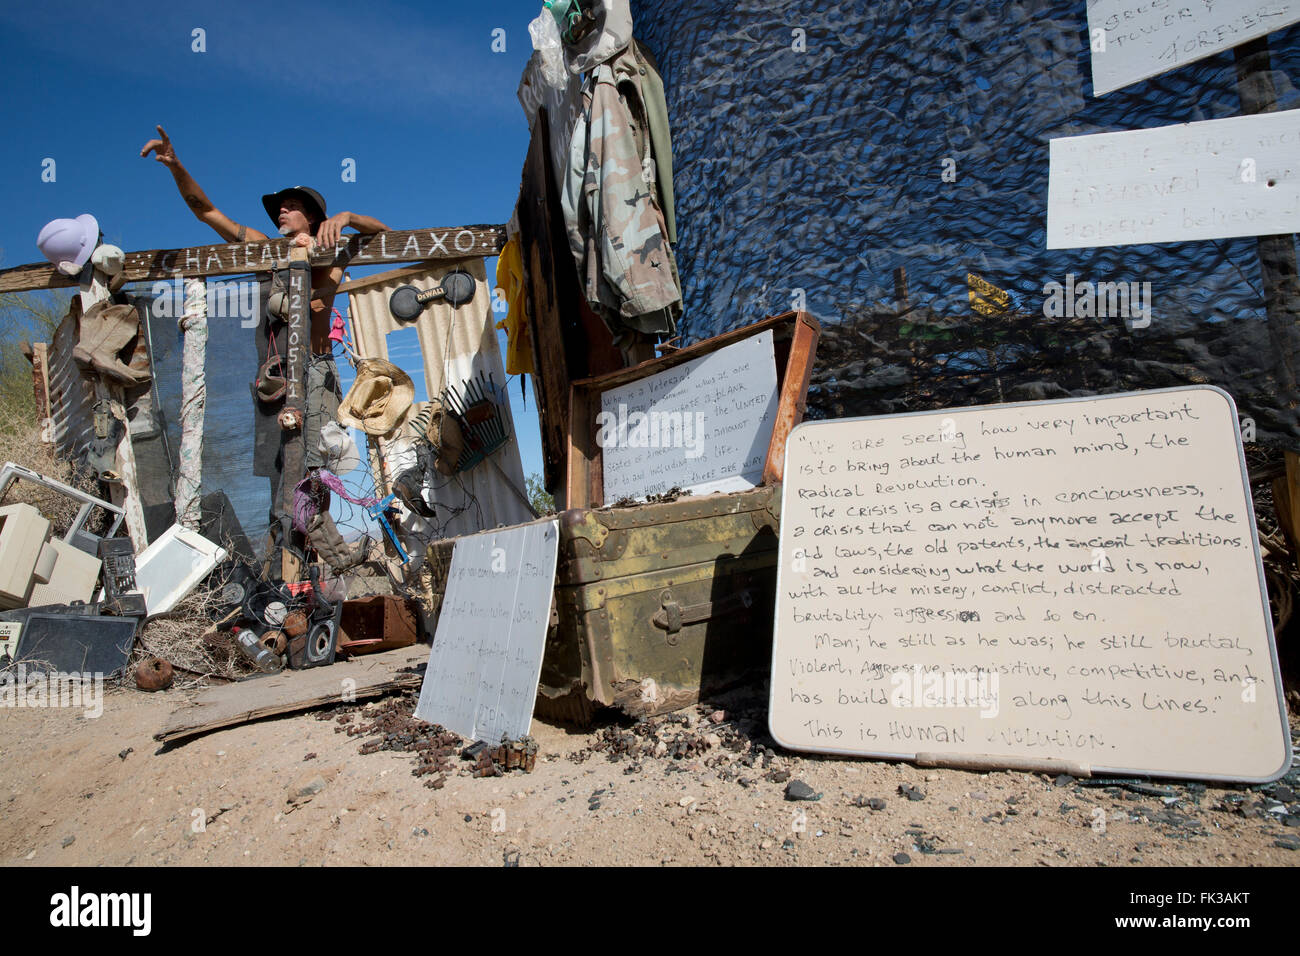 Karibe, ein Bewohner von Slab City, steht an der Pforte zu seinem Lager, Niland, Kalifornien USA Stockfoto